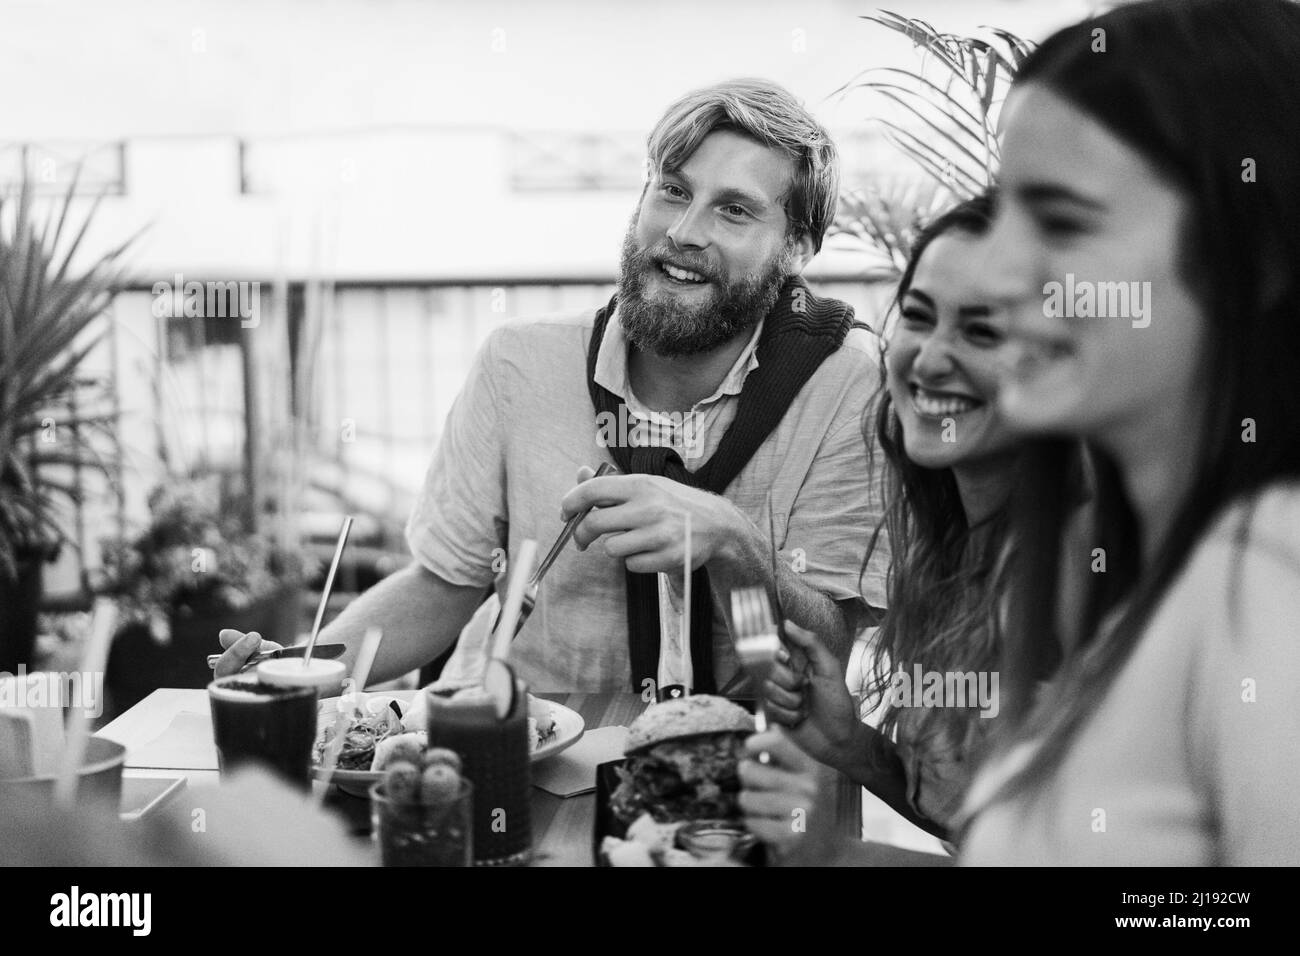 Les jeunes mangent un brunch et boivent des smoothies au bar-restaurant sain - Focus on man face - Black and White Edition Banque D'Images